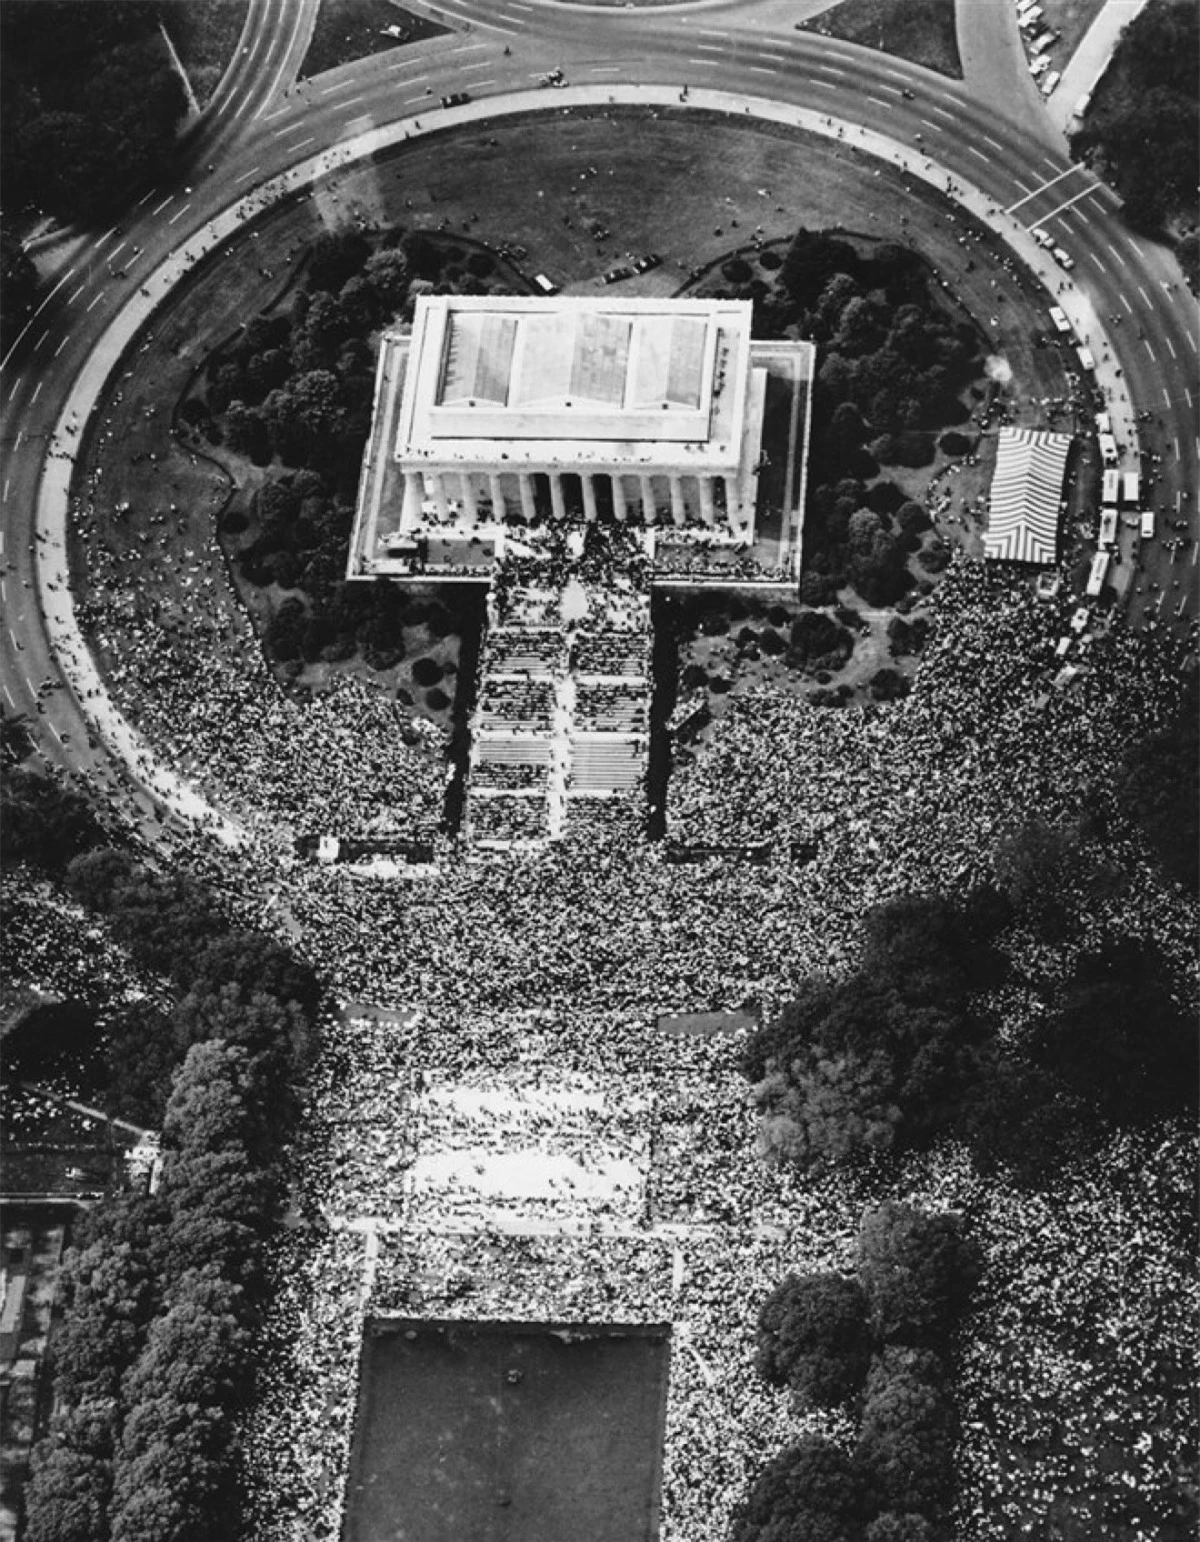 Đám đông tập trung tại Đài tưởng niệm Lincoln để theo dõi bài phát biểu "Tôi có một giấc mơ" của mục sư King vào ngày 28/8/1963. Ảnh: AP